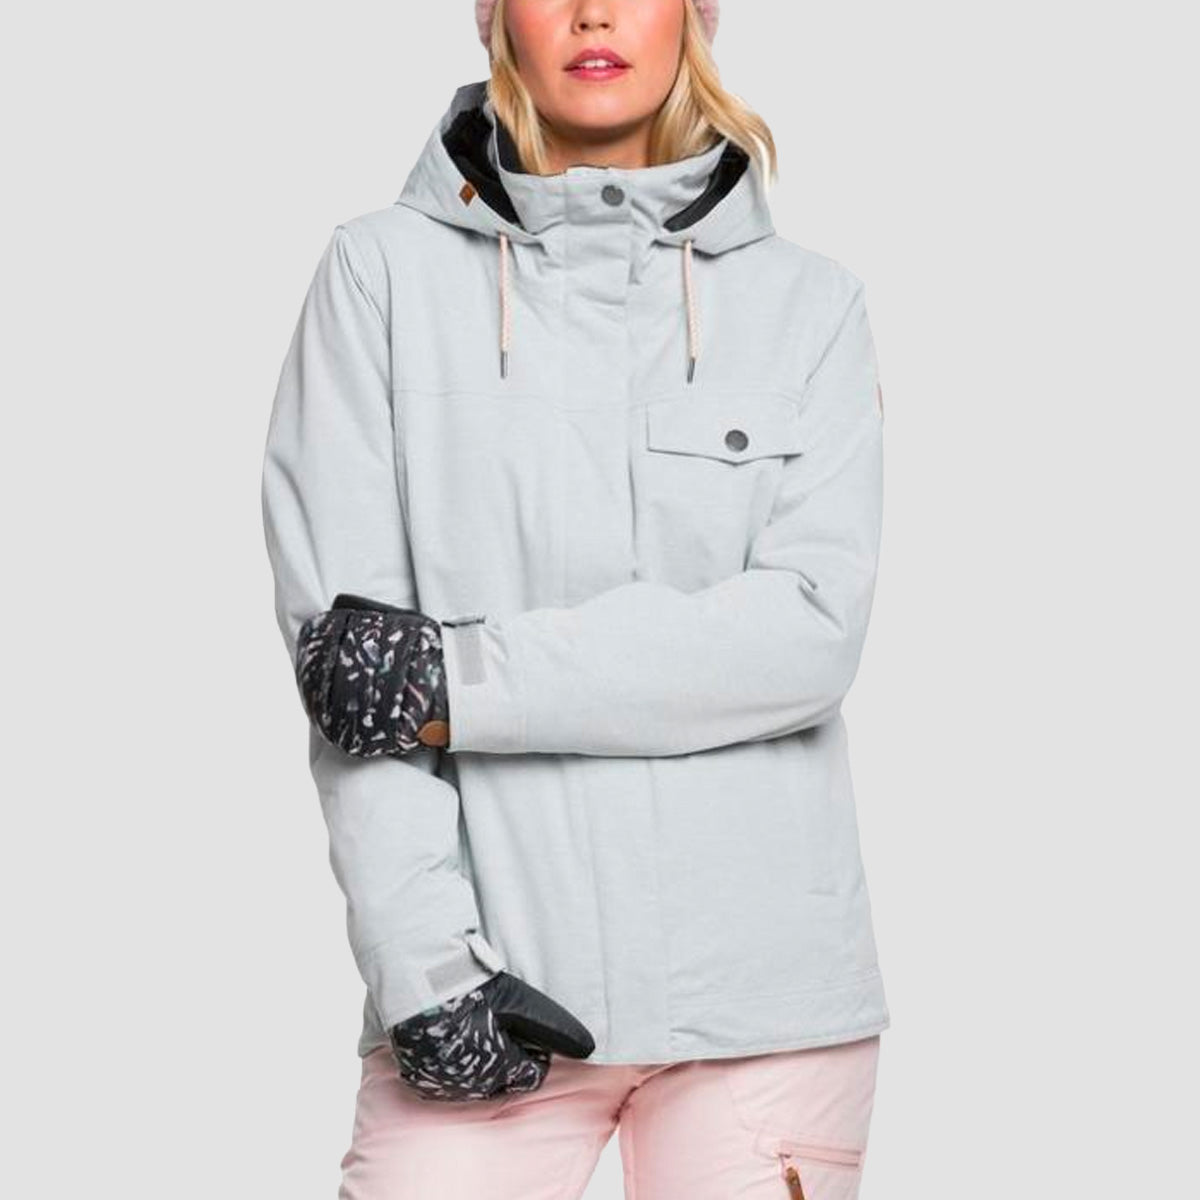 Roxy Billie Grey 10K Snowboard Jacket